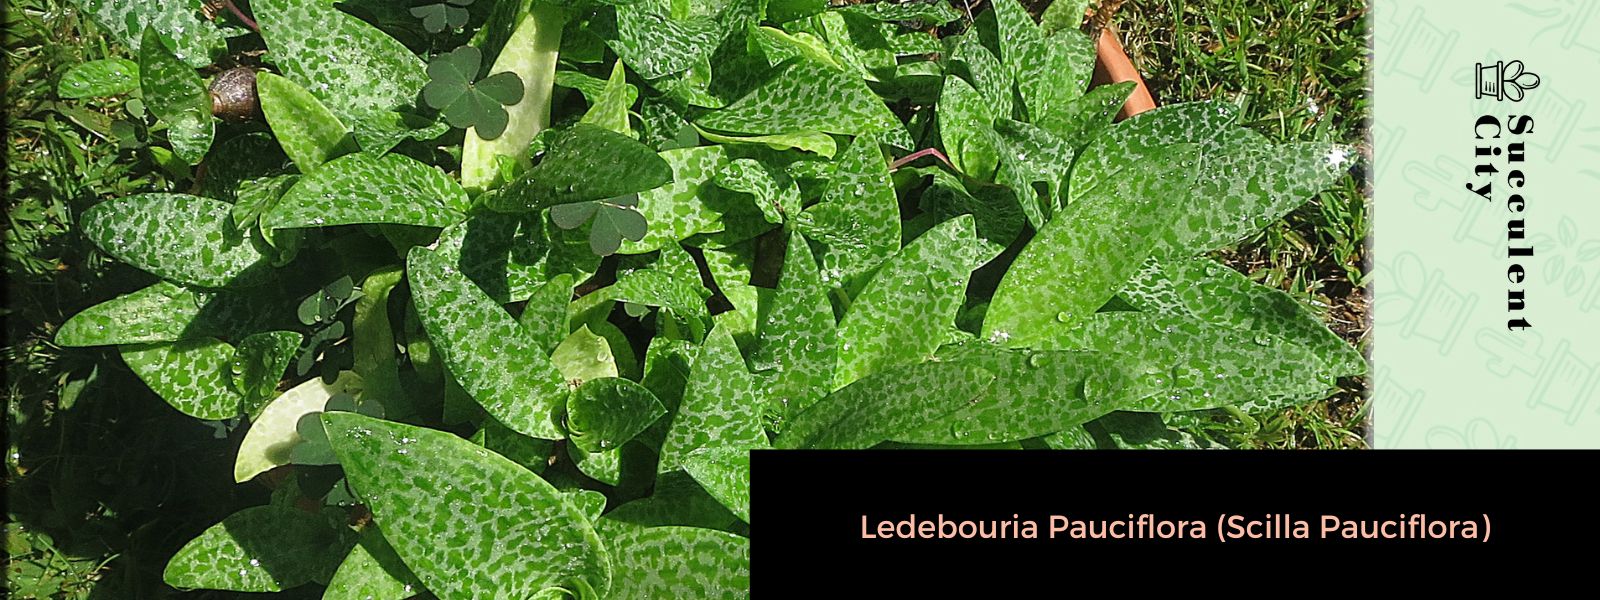 Ledebouria pauciflora (Scilla pauciflora)